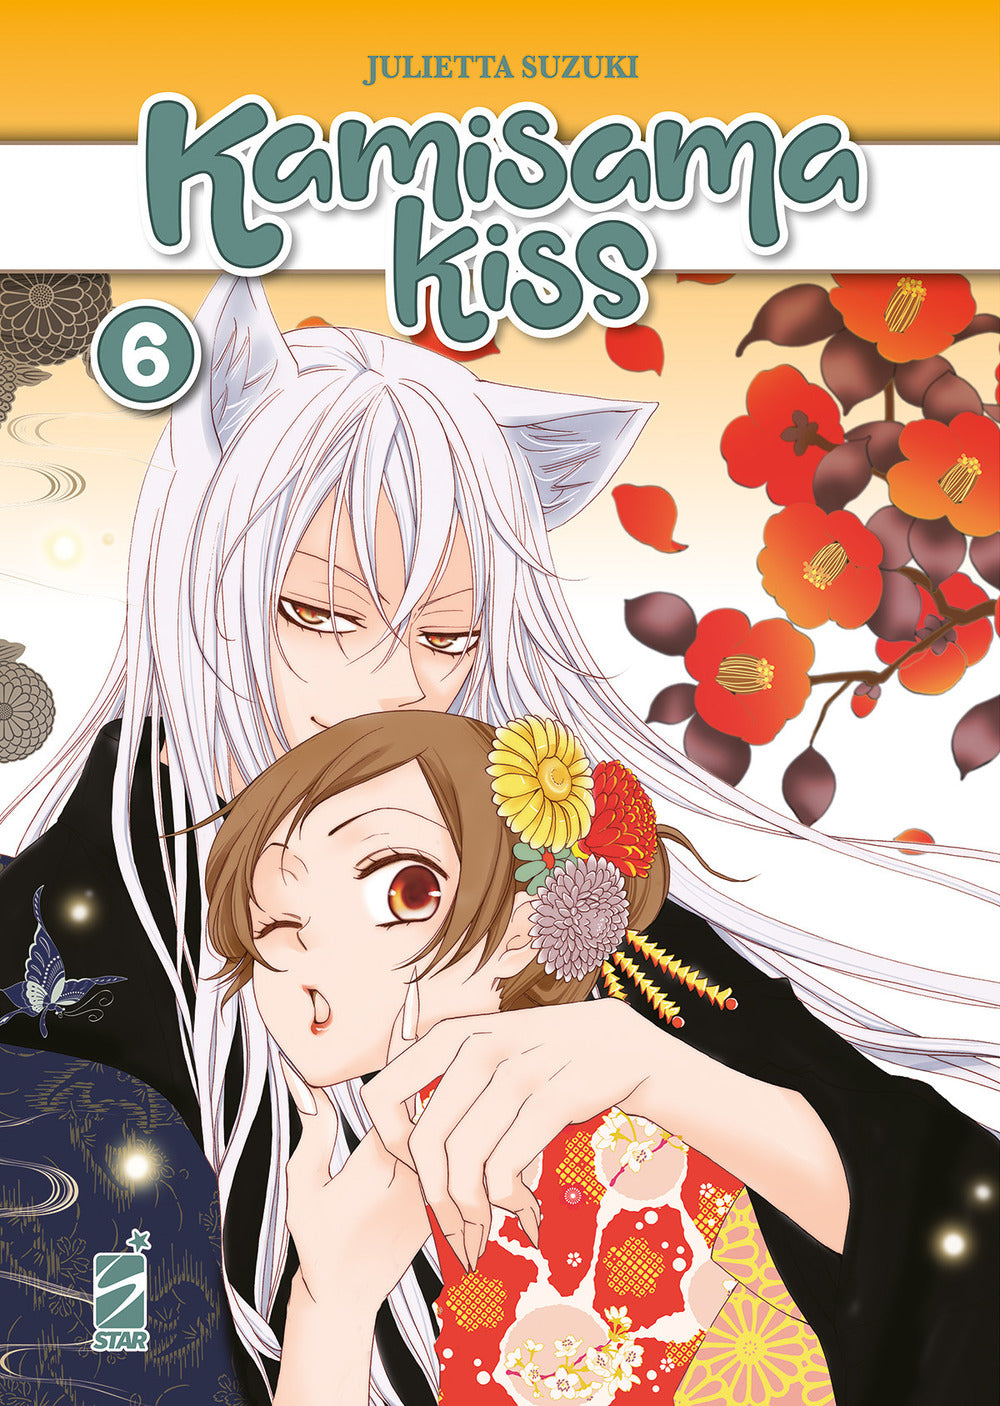 Kamisama kiss. New edition. Vol. 6